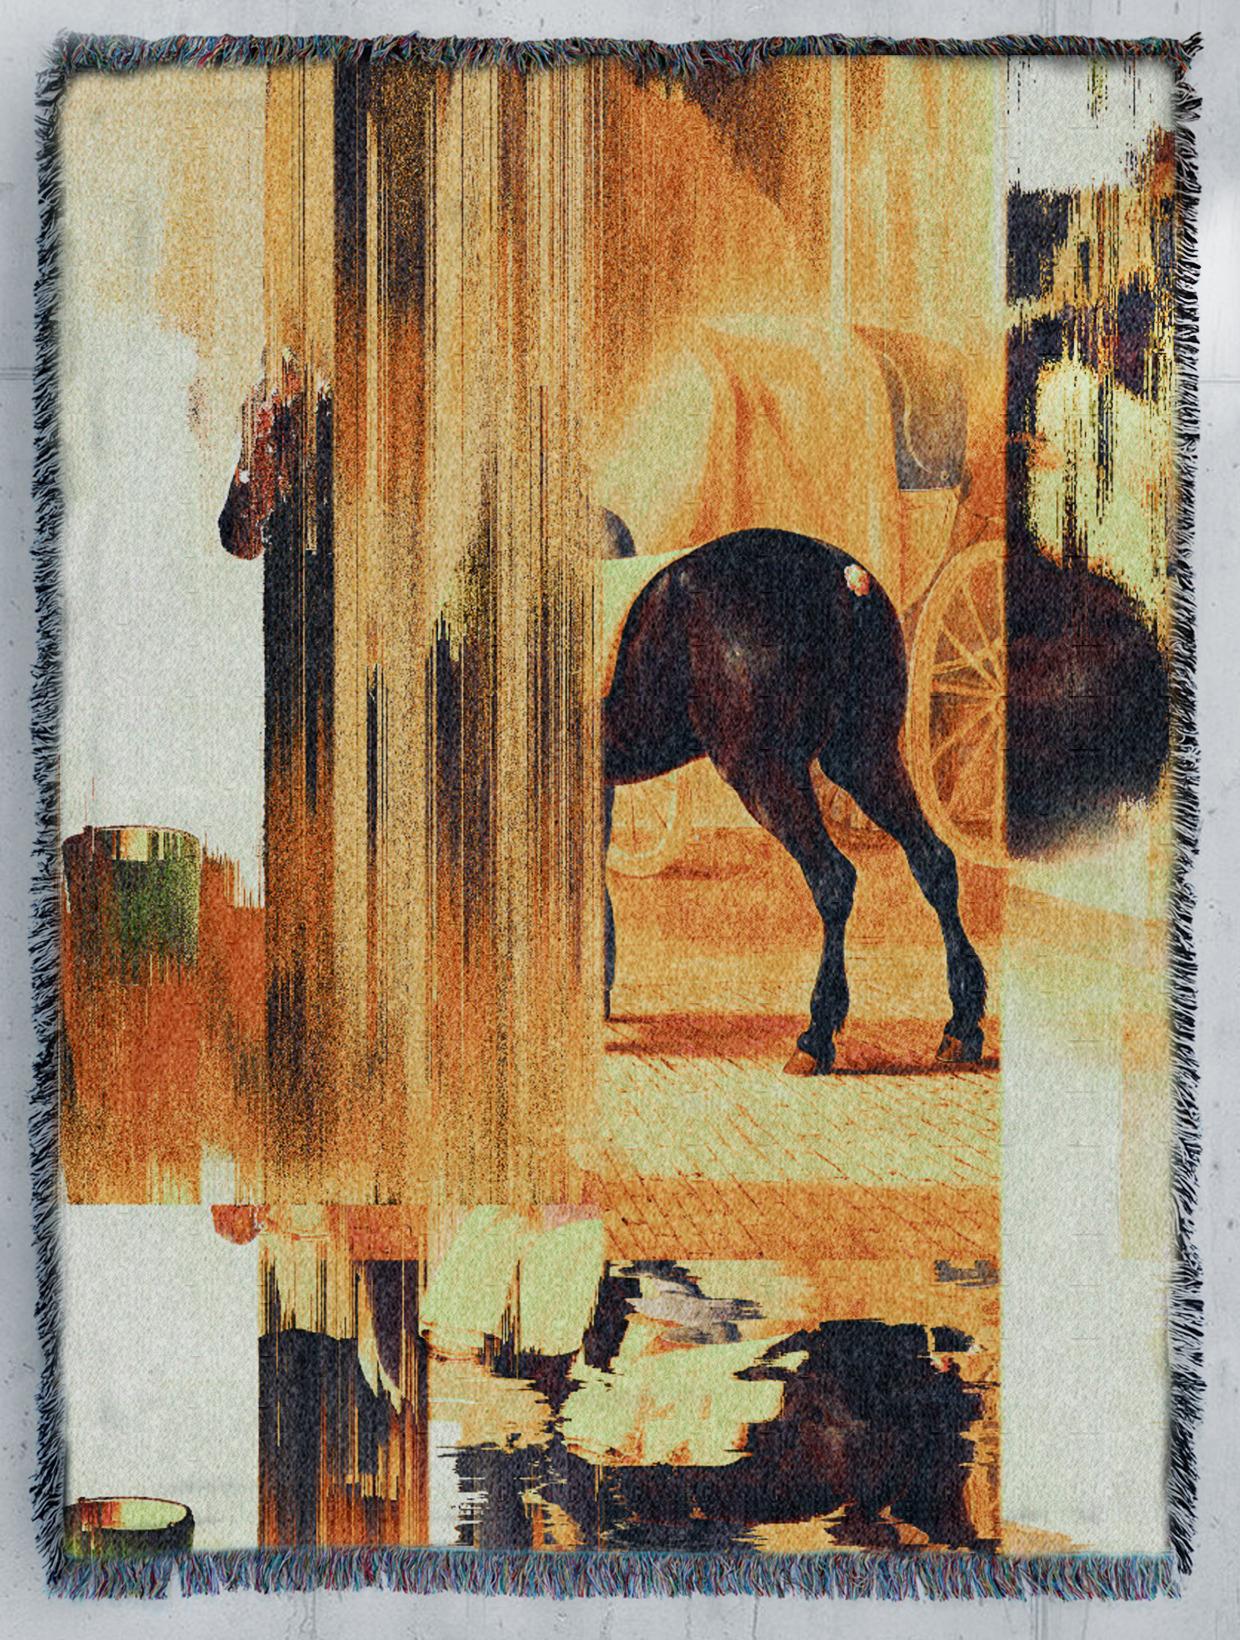 Memories of “Trotter De Rot Horse” by Van Der Hoop by Marco Salvi - Print by Unknown